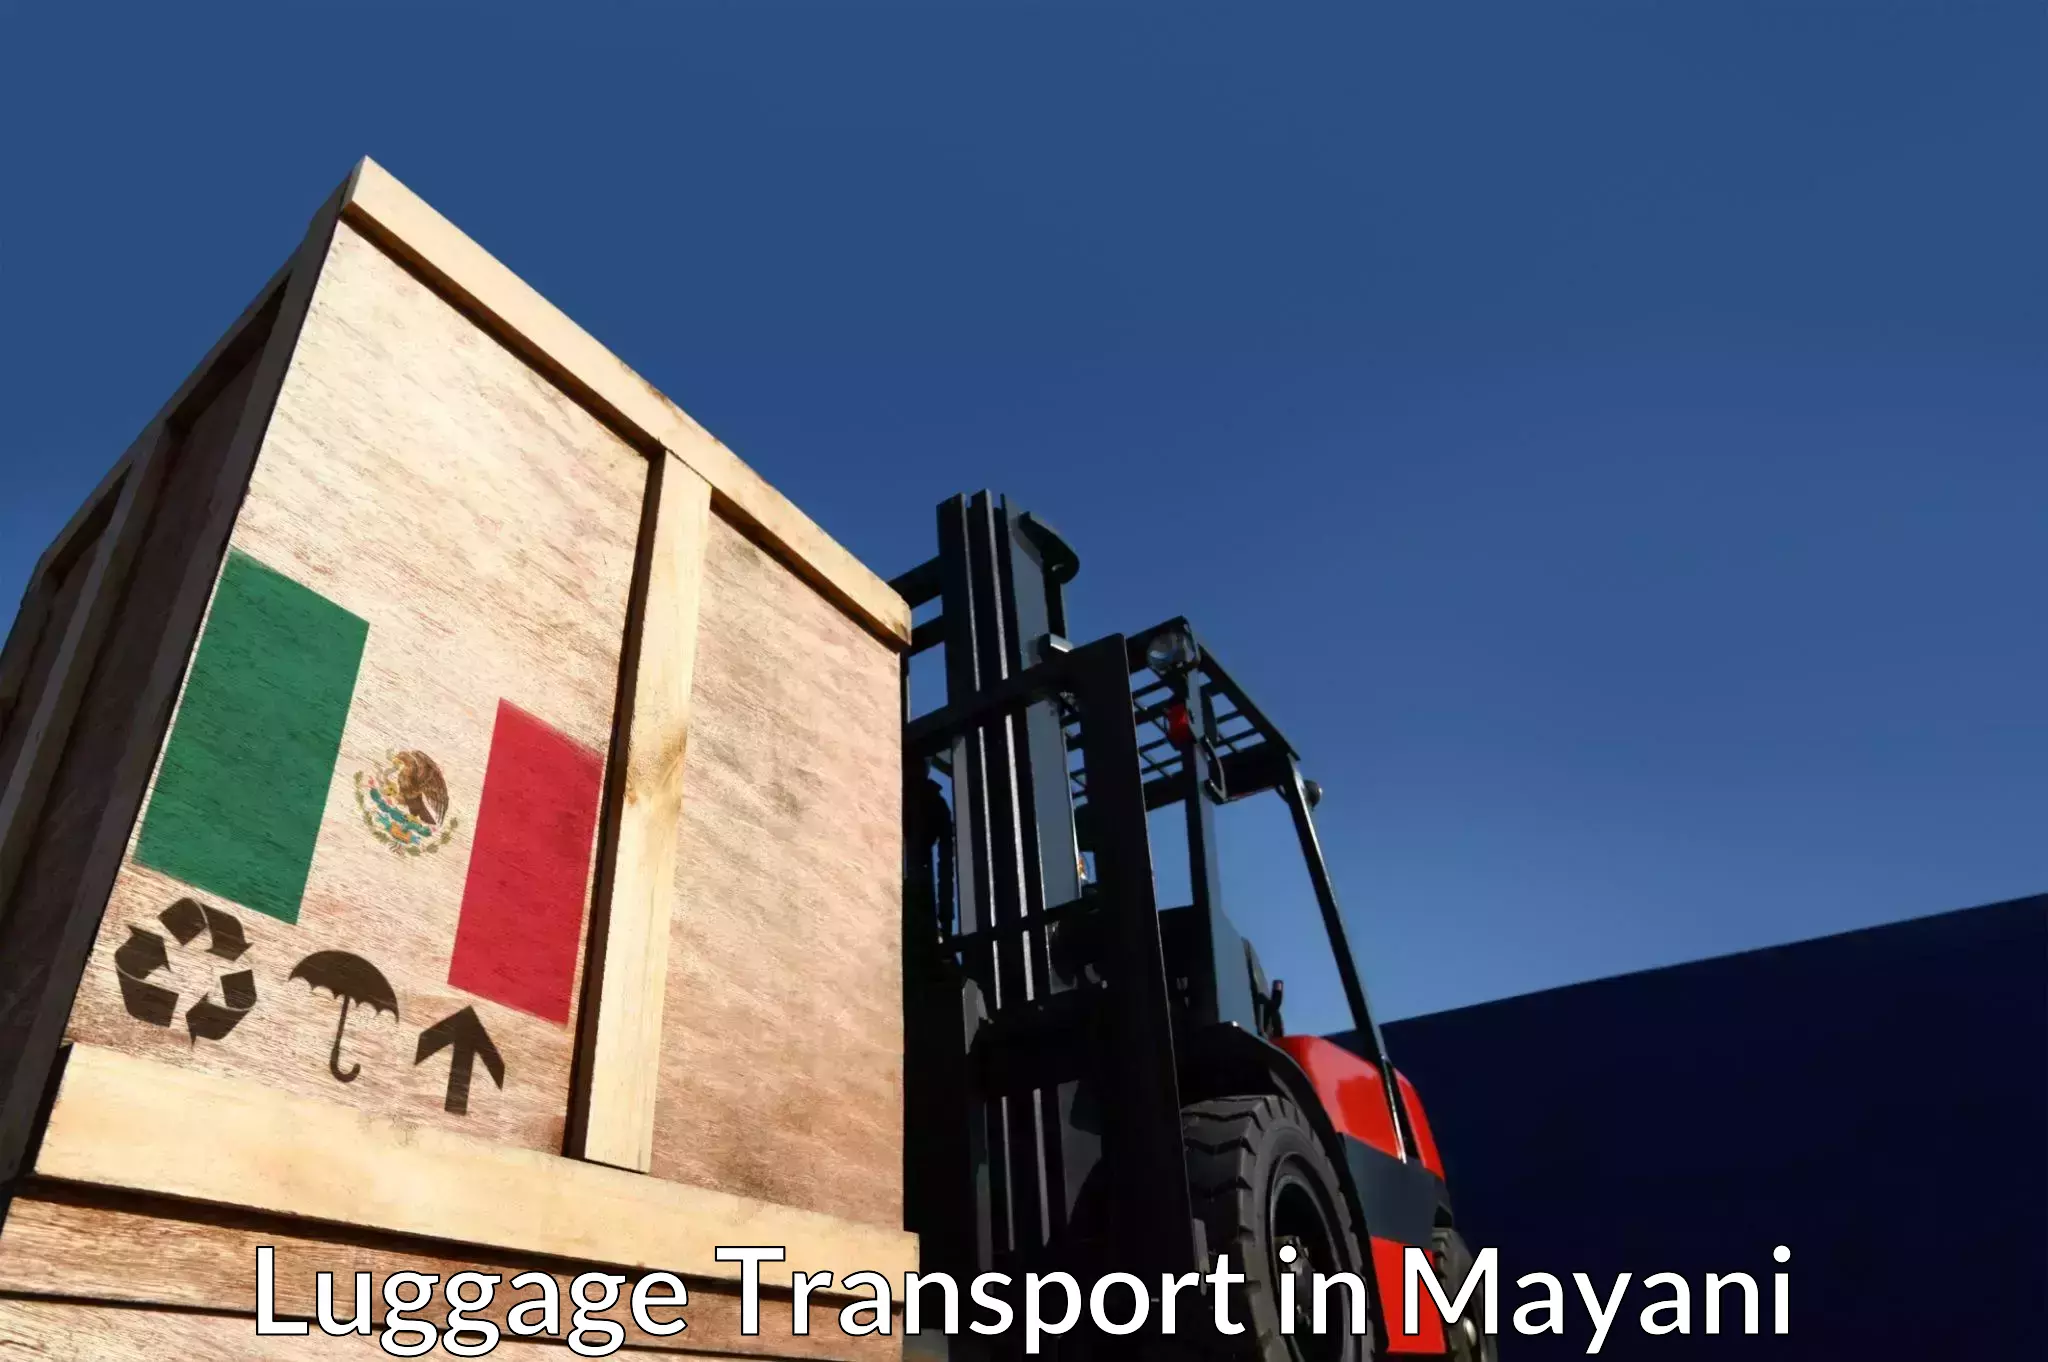 Luggage transfer service in Mayani